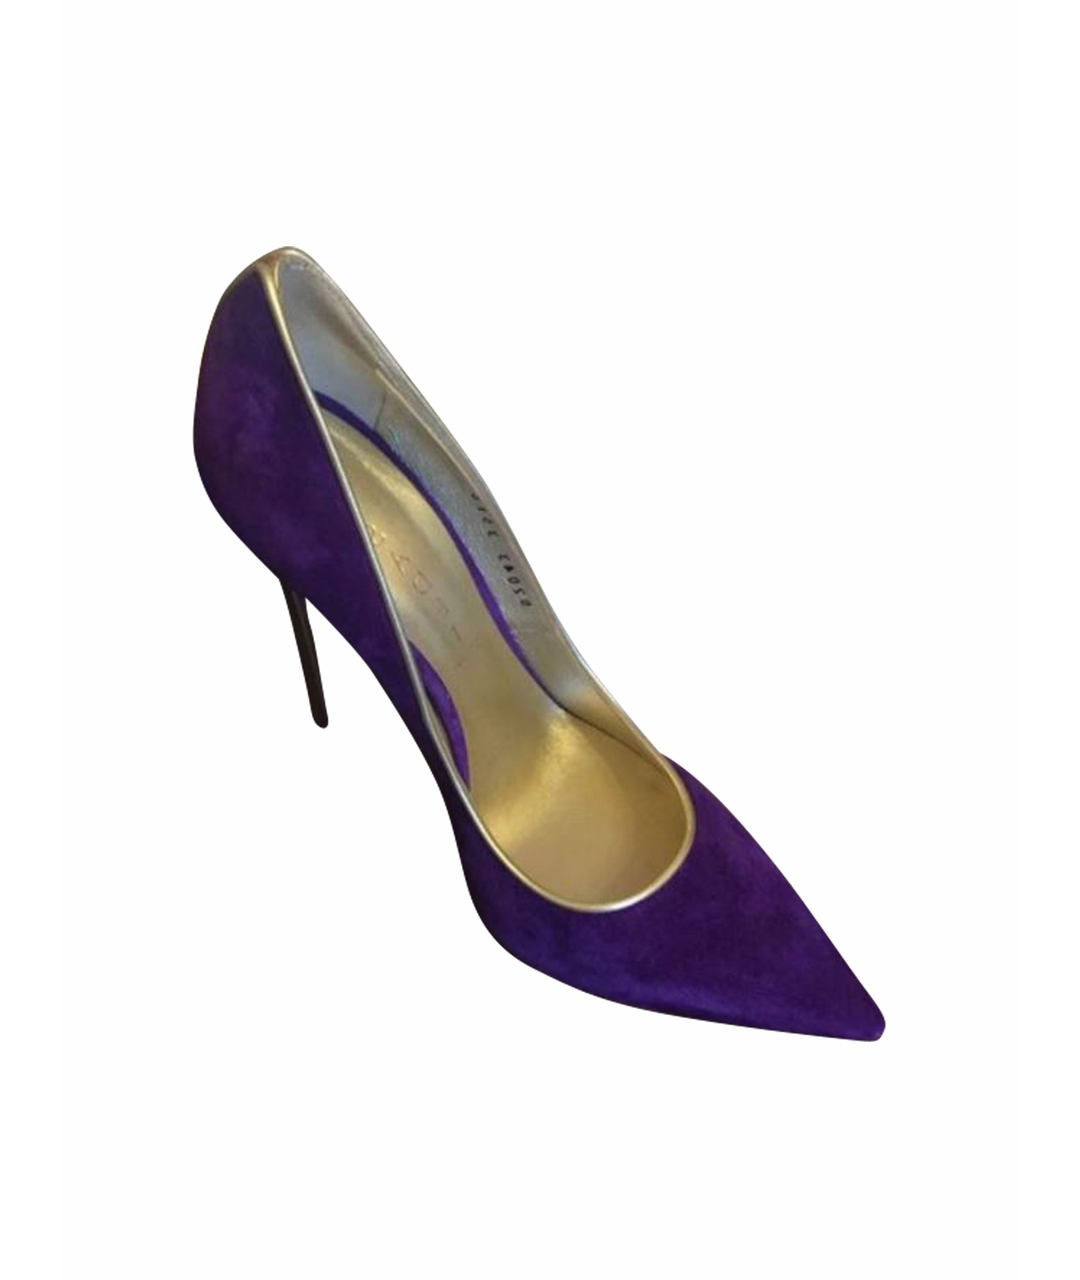 CASADEI Фиолетовые замшевые туфли, фото 1